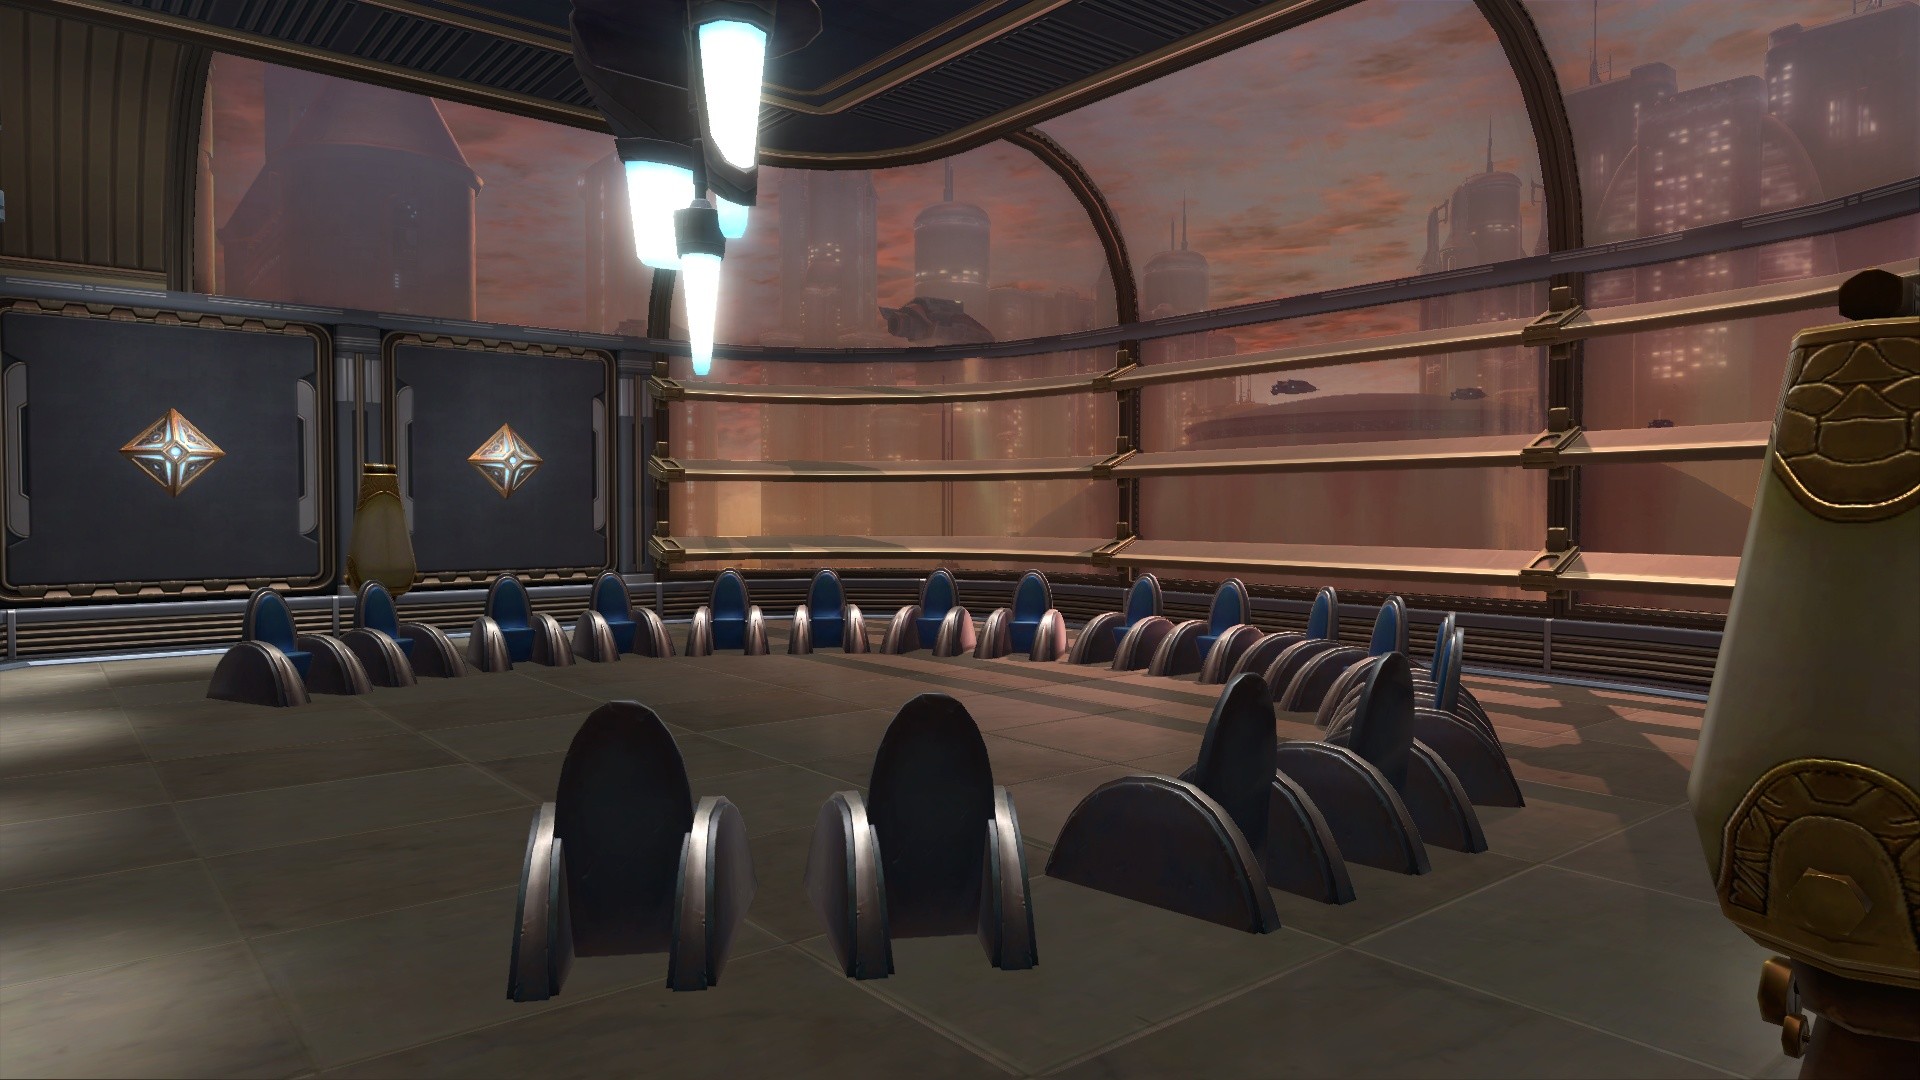 1920x1080 Averth's Jedi Council/Conference Room - The Ebon Hawk